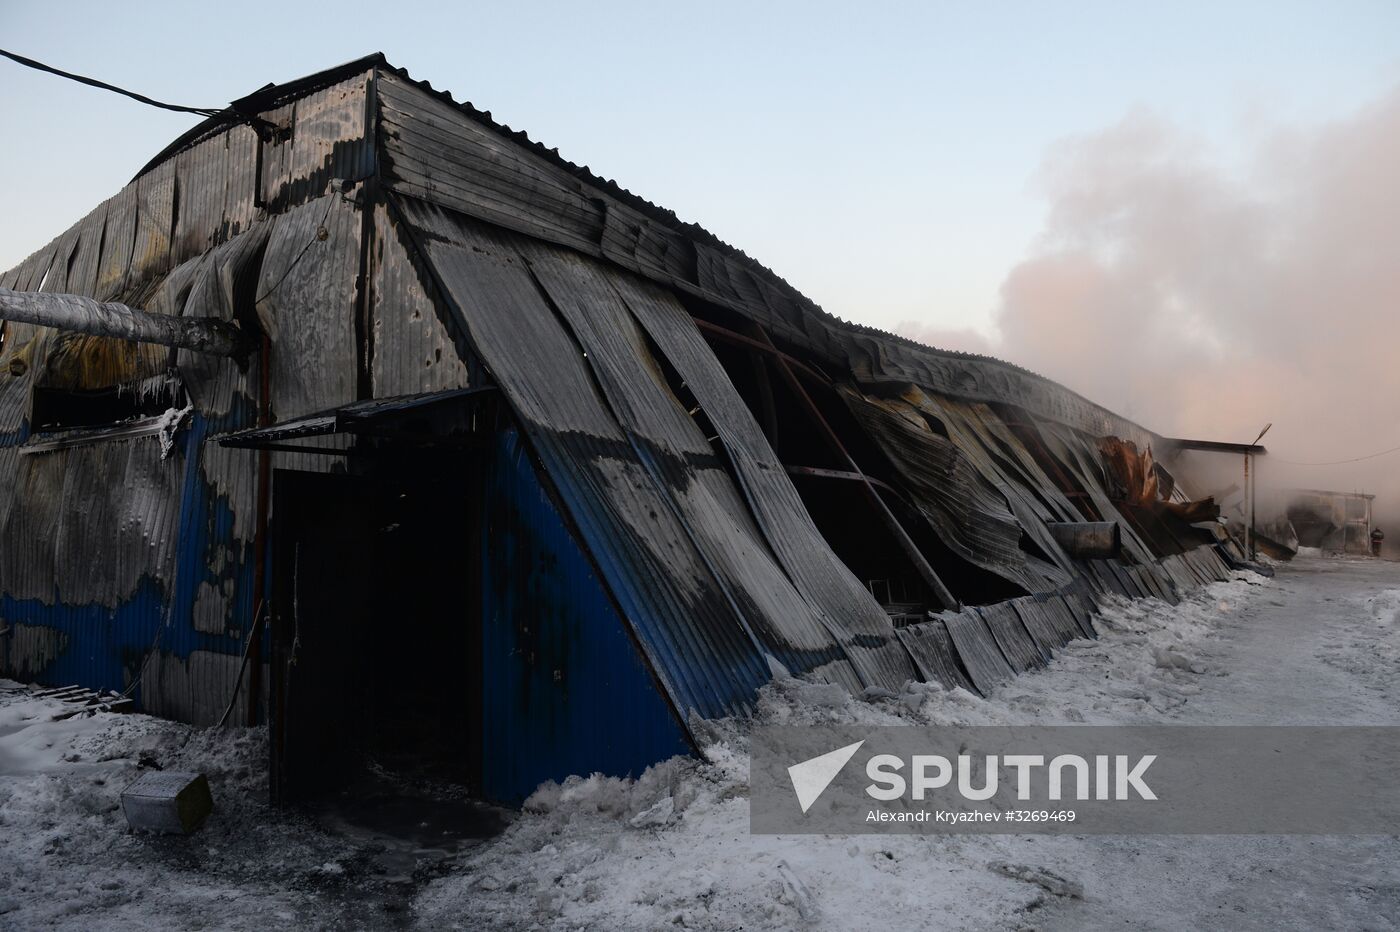 Fire in Novosibirsk Region